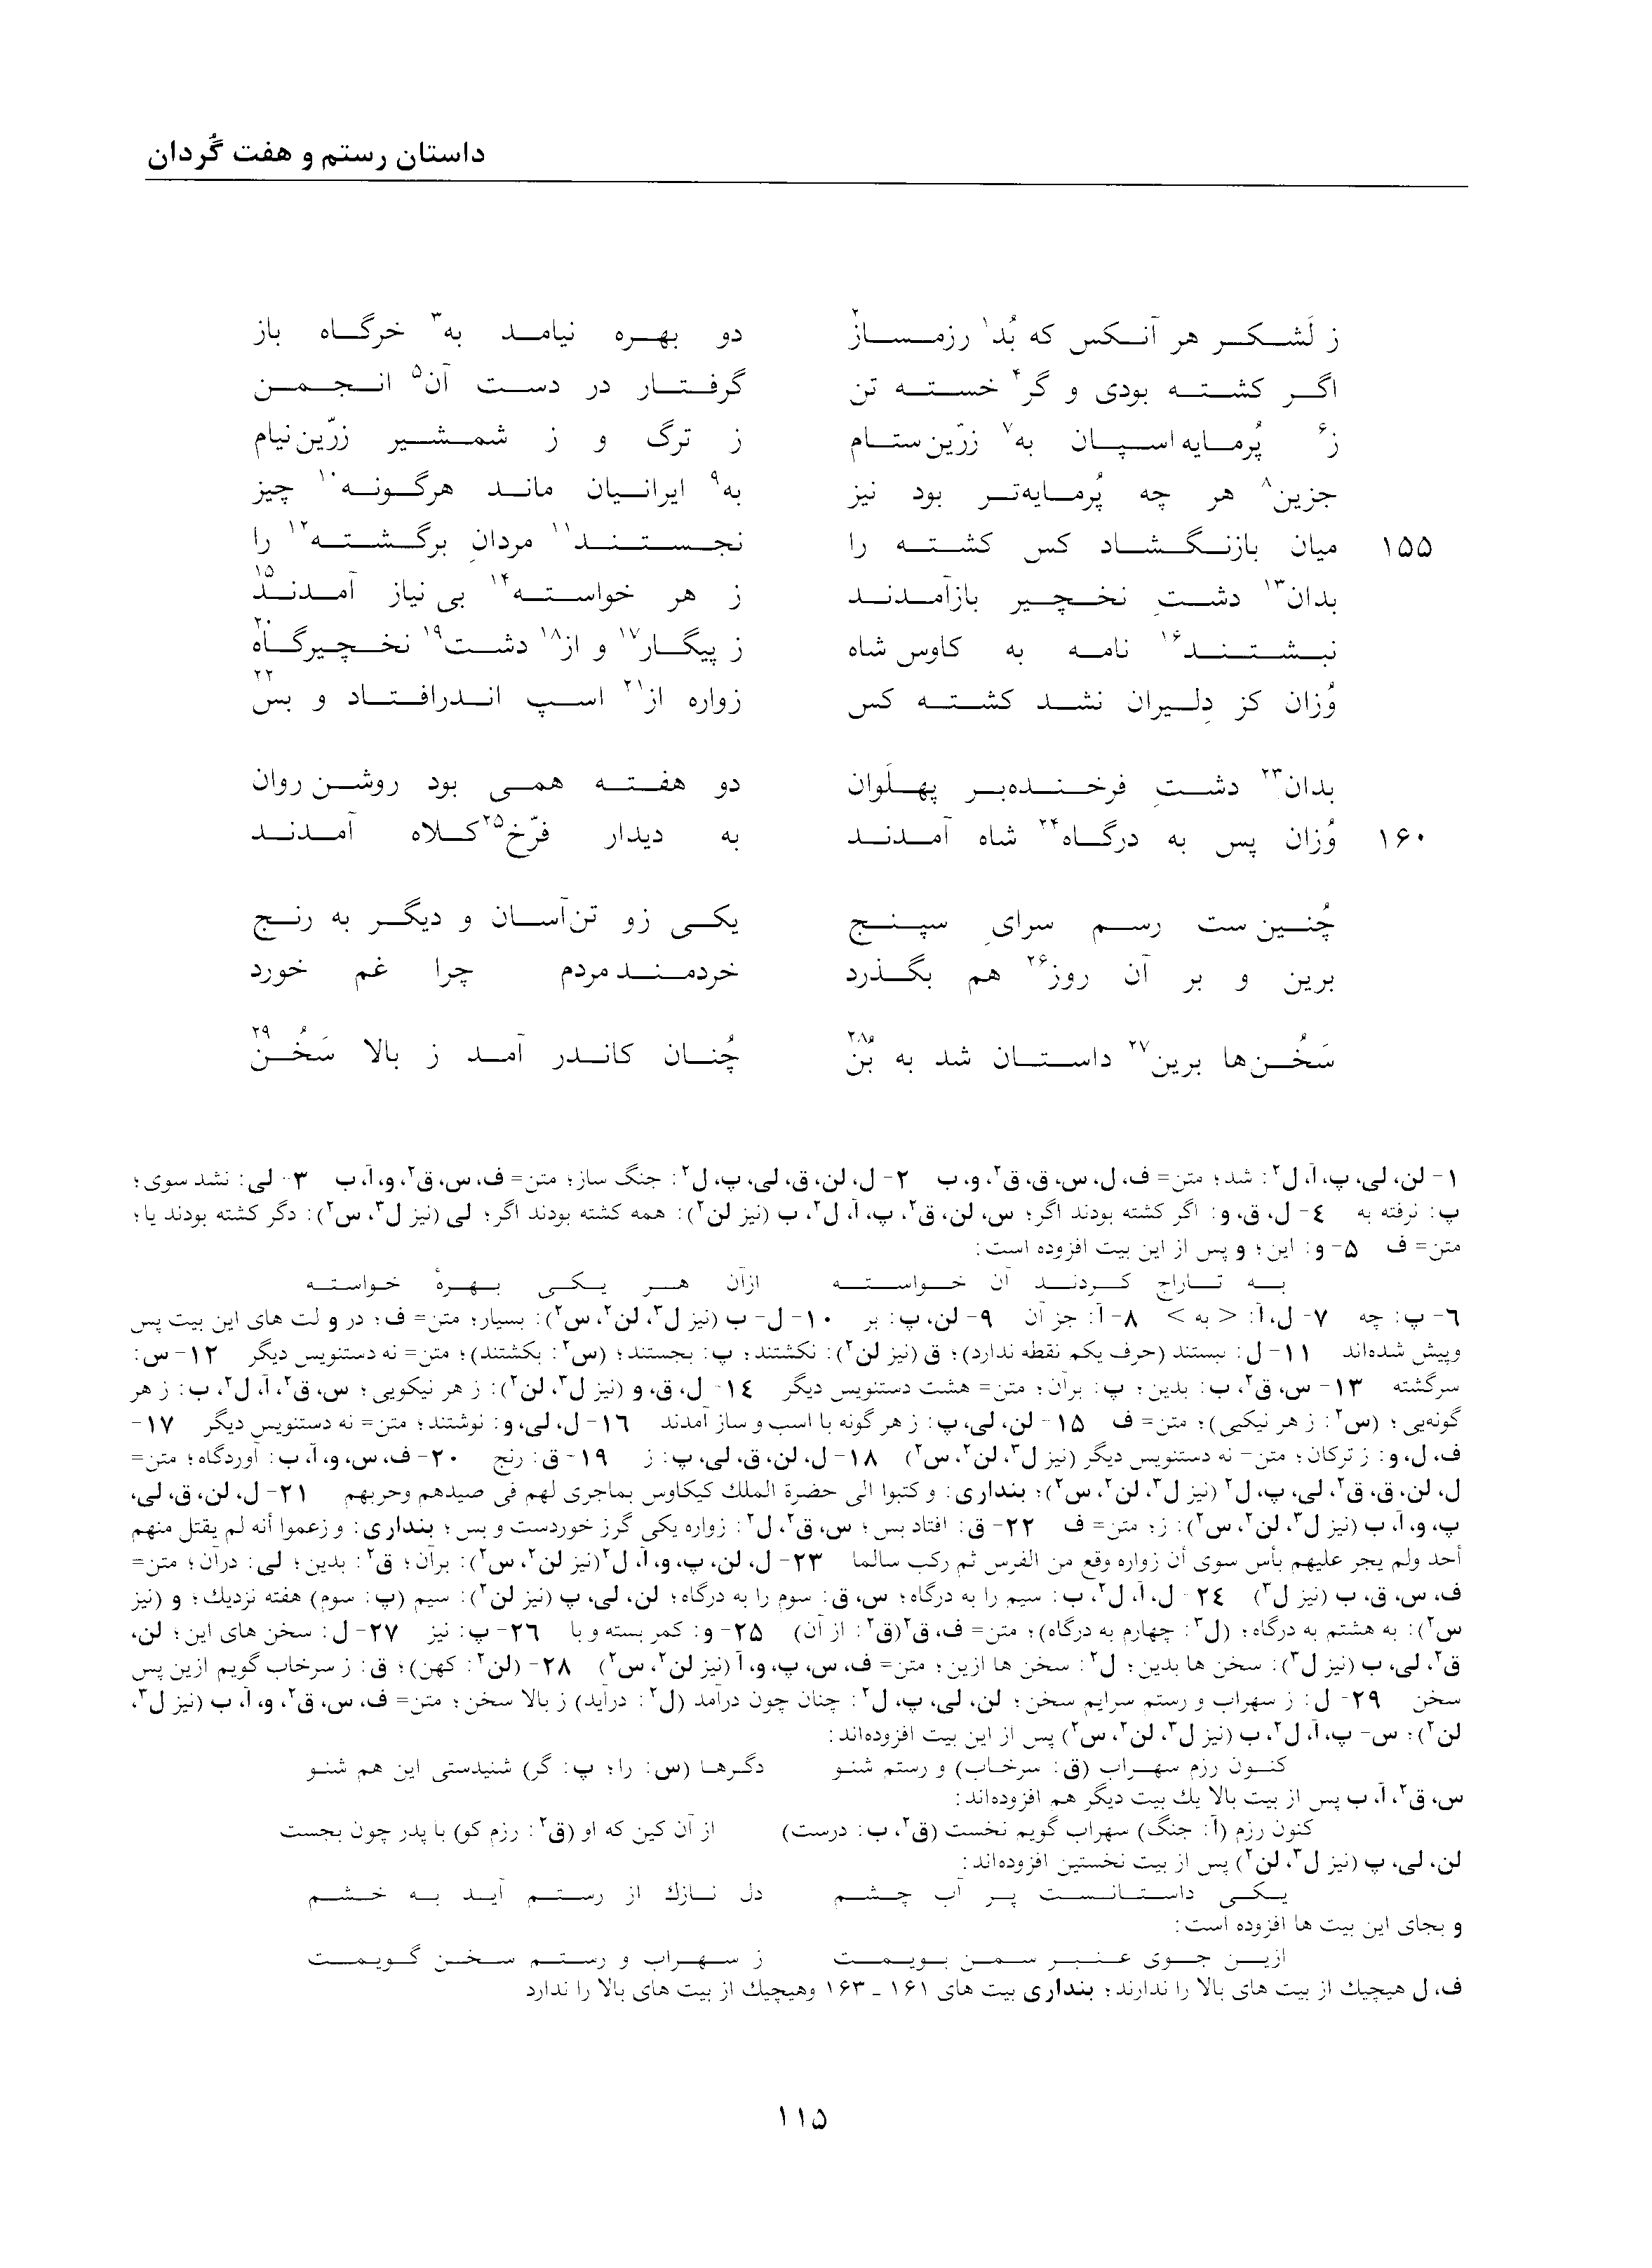 vol. 2, p. 115